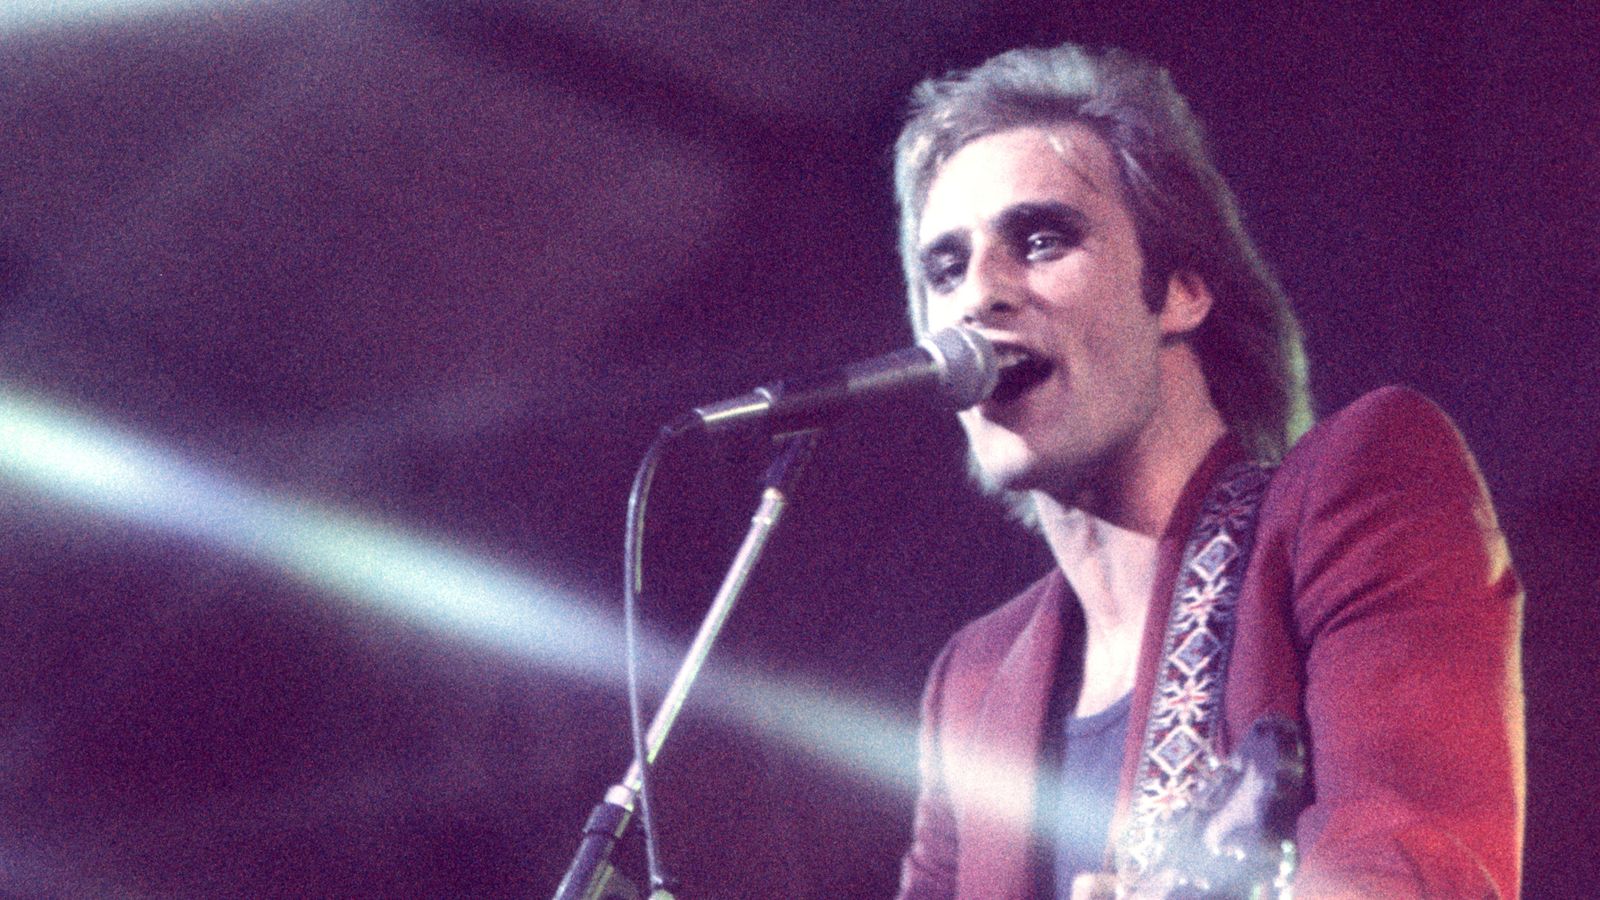 Cockney Rebel frontman Steve Harley dies – singer’s ‘devastated’ household pays tribute